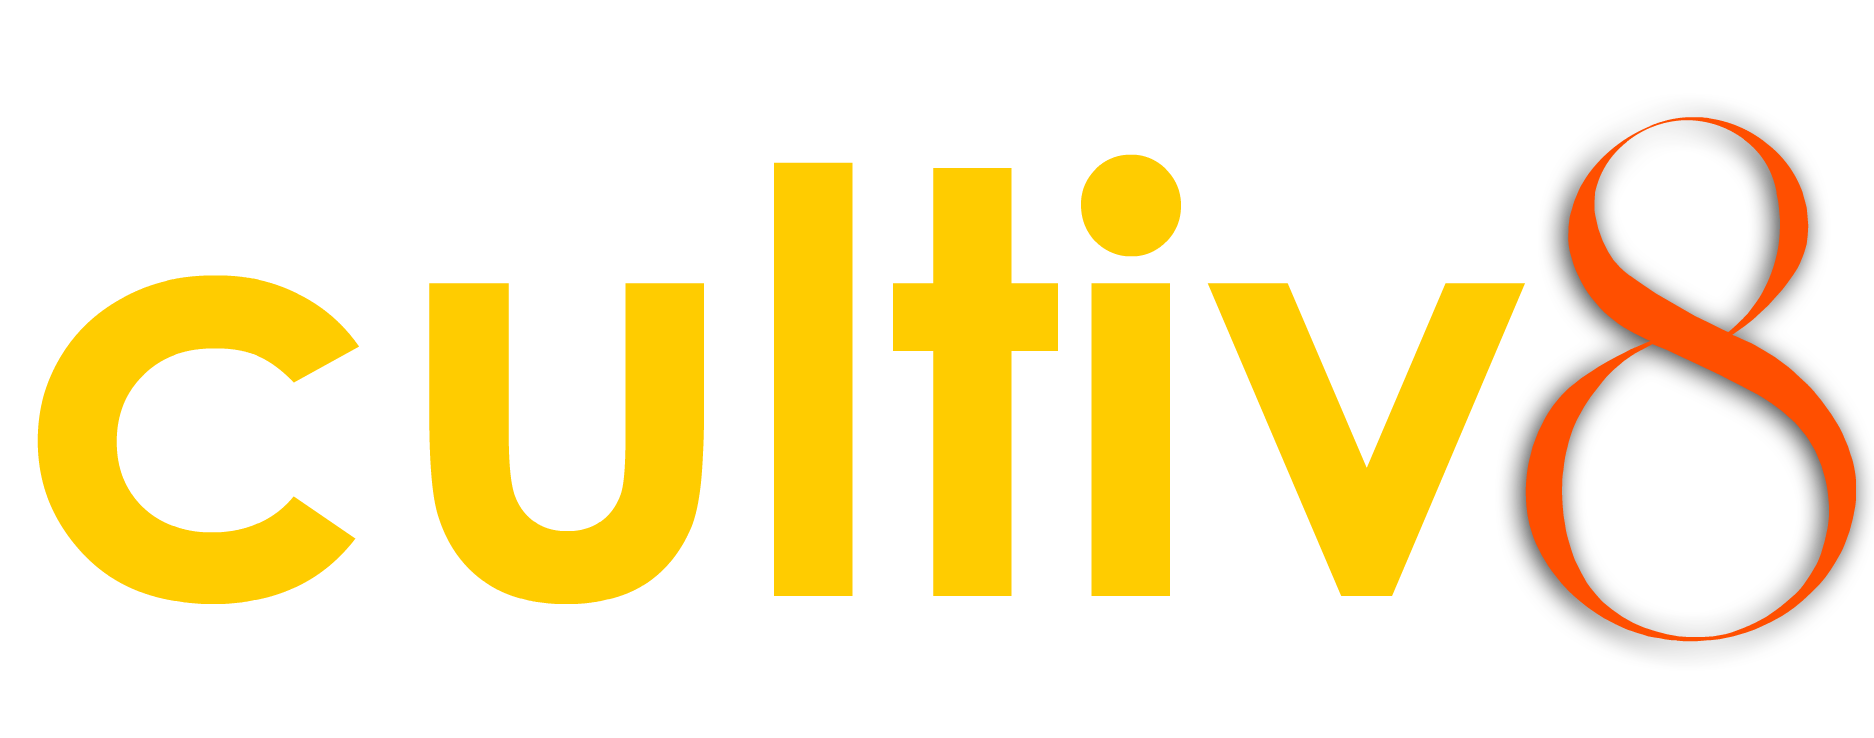 cultiv8 logo